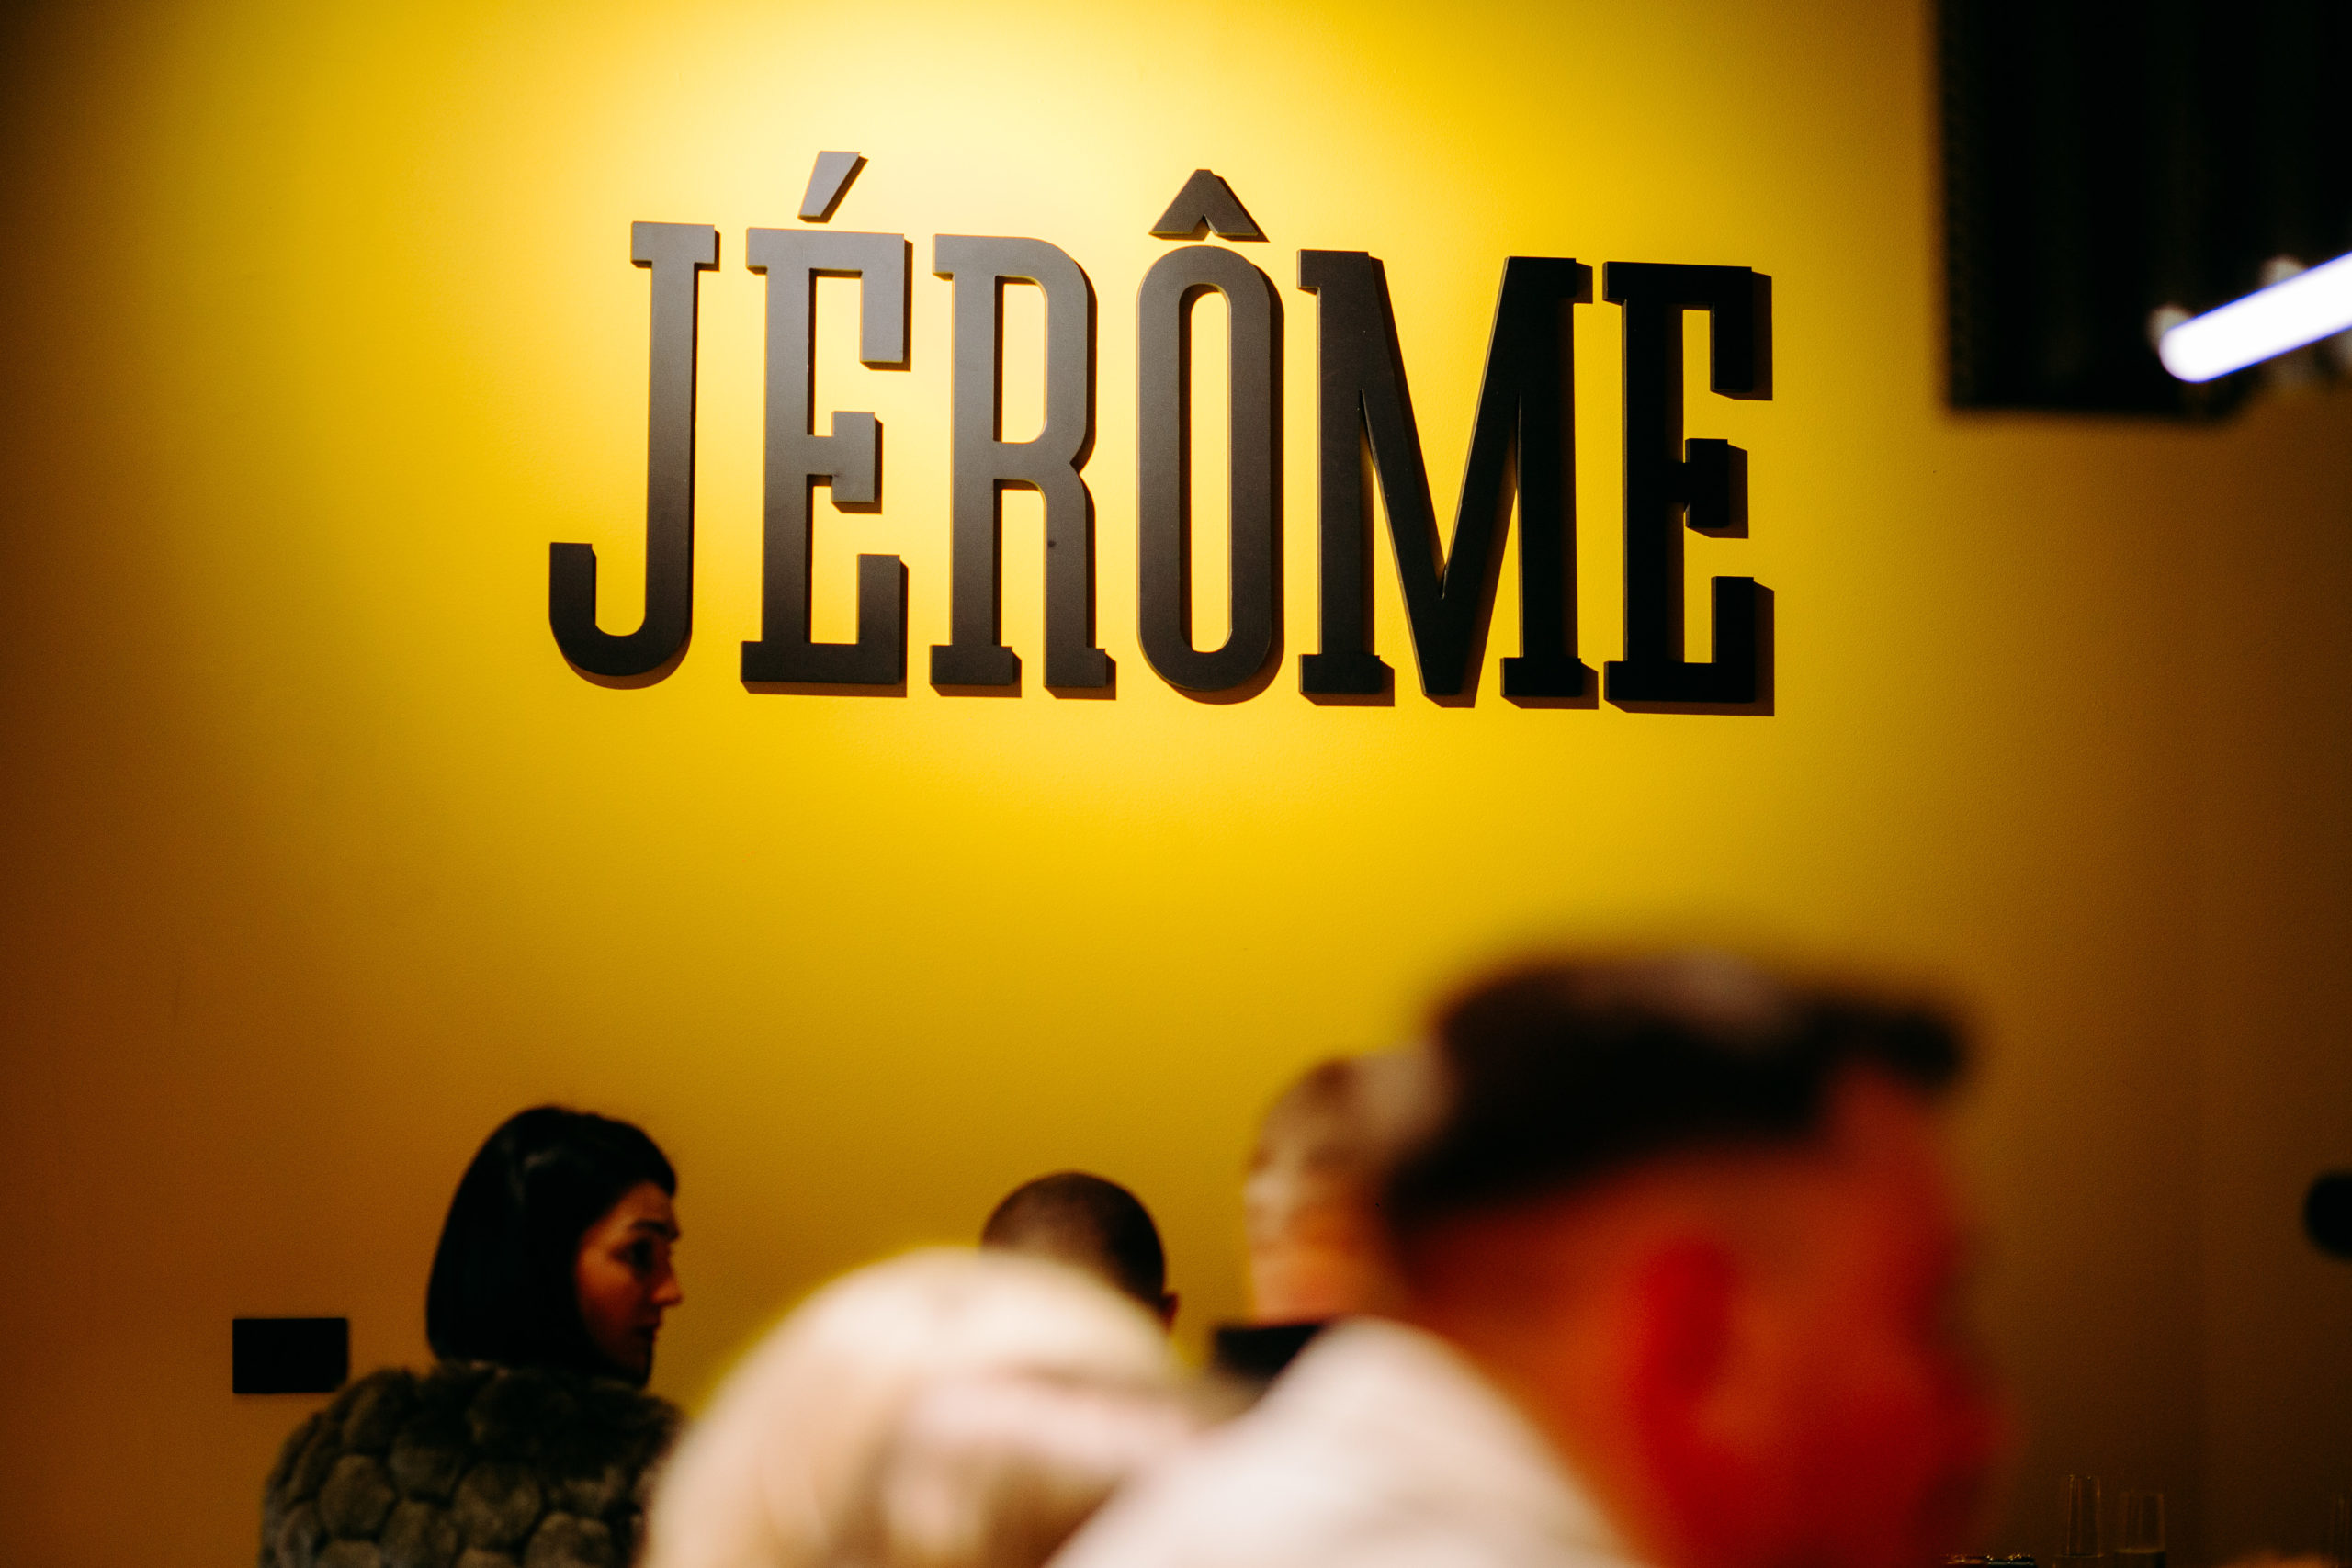 FOTO: Jérôme – un altfel de fast food în Oradea și Salonta! 13.05.2022